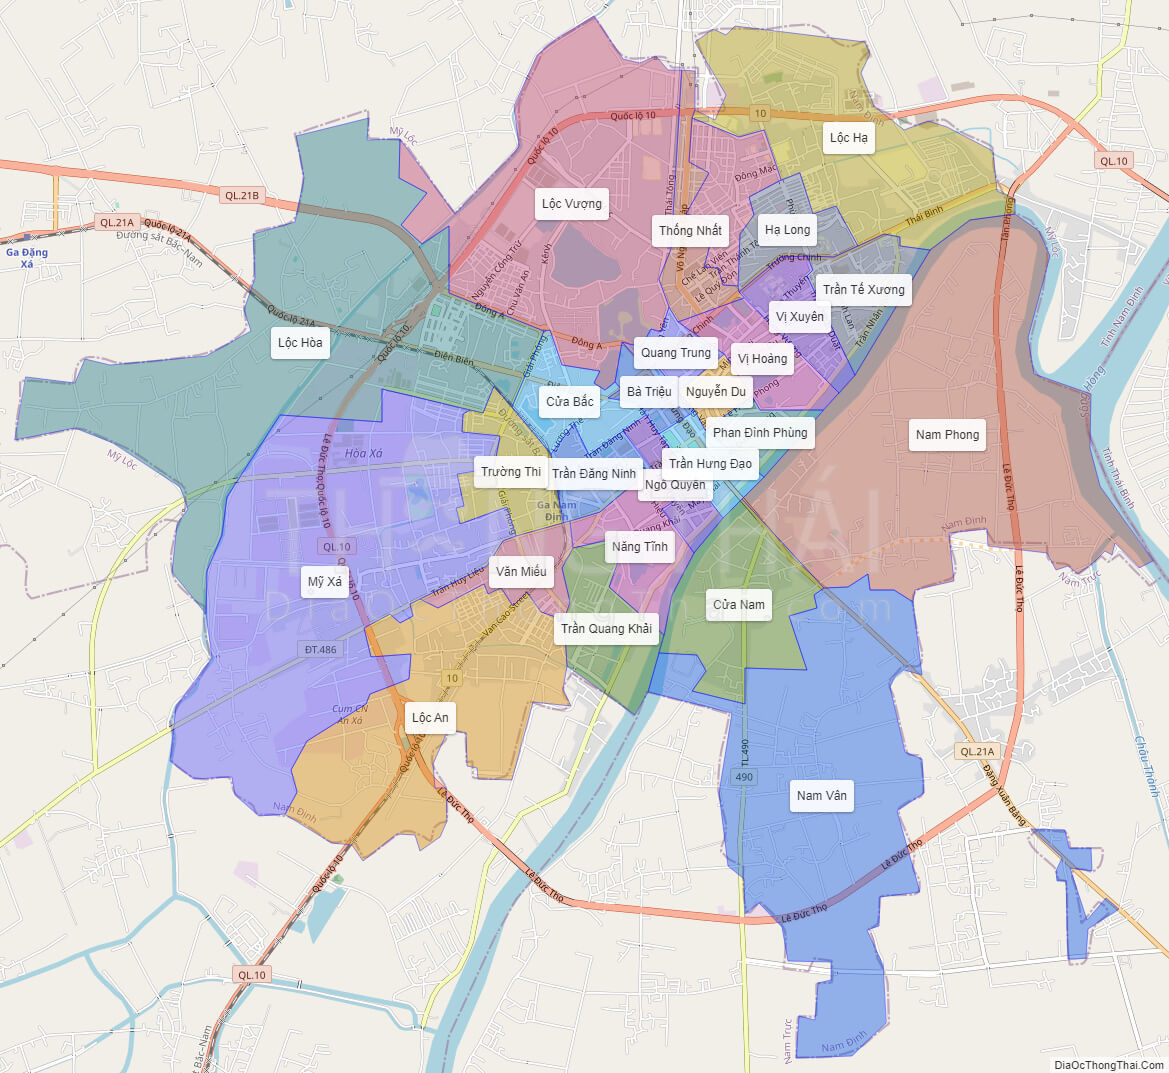 Bản đồ TP Nam Định sẽ khiến cho du khách có thể dễ dàng tìm kiếm và định vị được các địa điểm, tòa nhà, công trình cơ sở hạ tầng, các khu dân cư, trung tâm thương mại... Năm 2024, việc sử dụng công nghệ mới giúp cho bản đồ trở nên thông minh và chính xác hơn bao giờ hết.